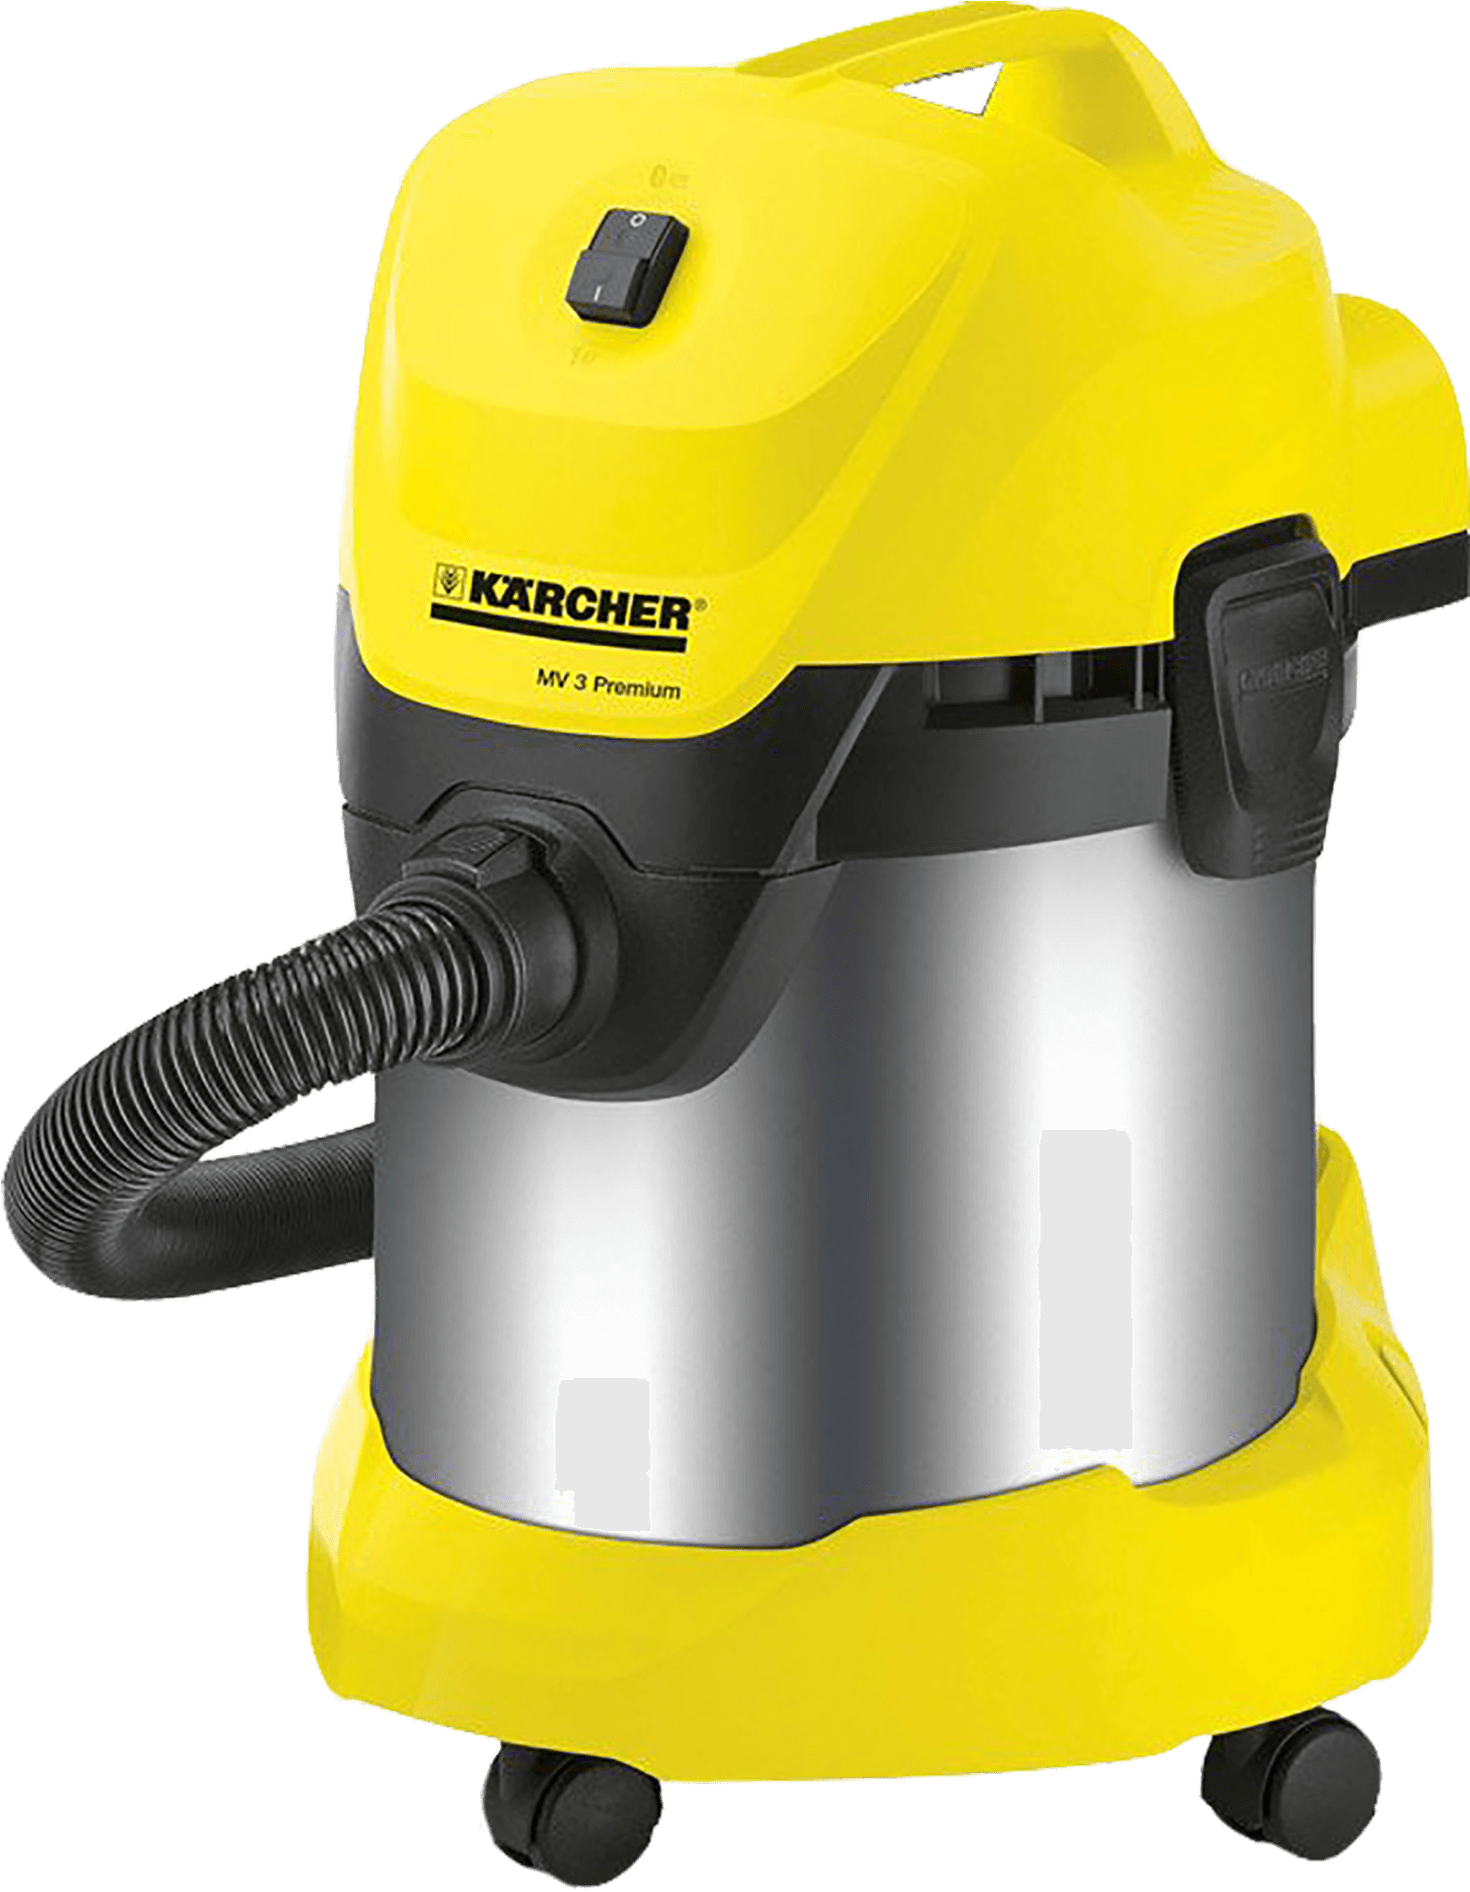 Karcher Vacuum Cleaner Model - Пылесос Karcher Wd 3 Premium (2015x2362), Png Download